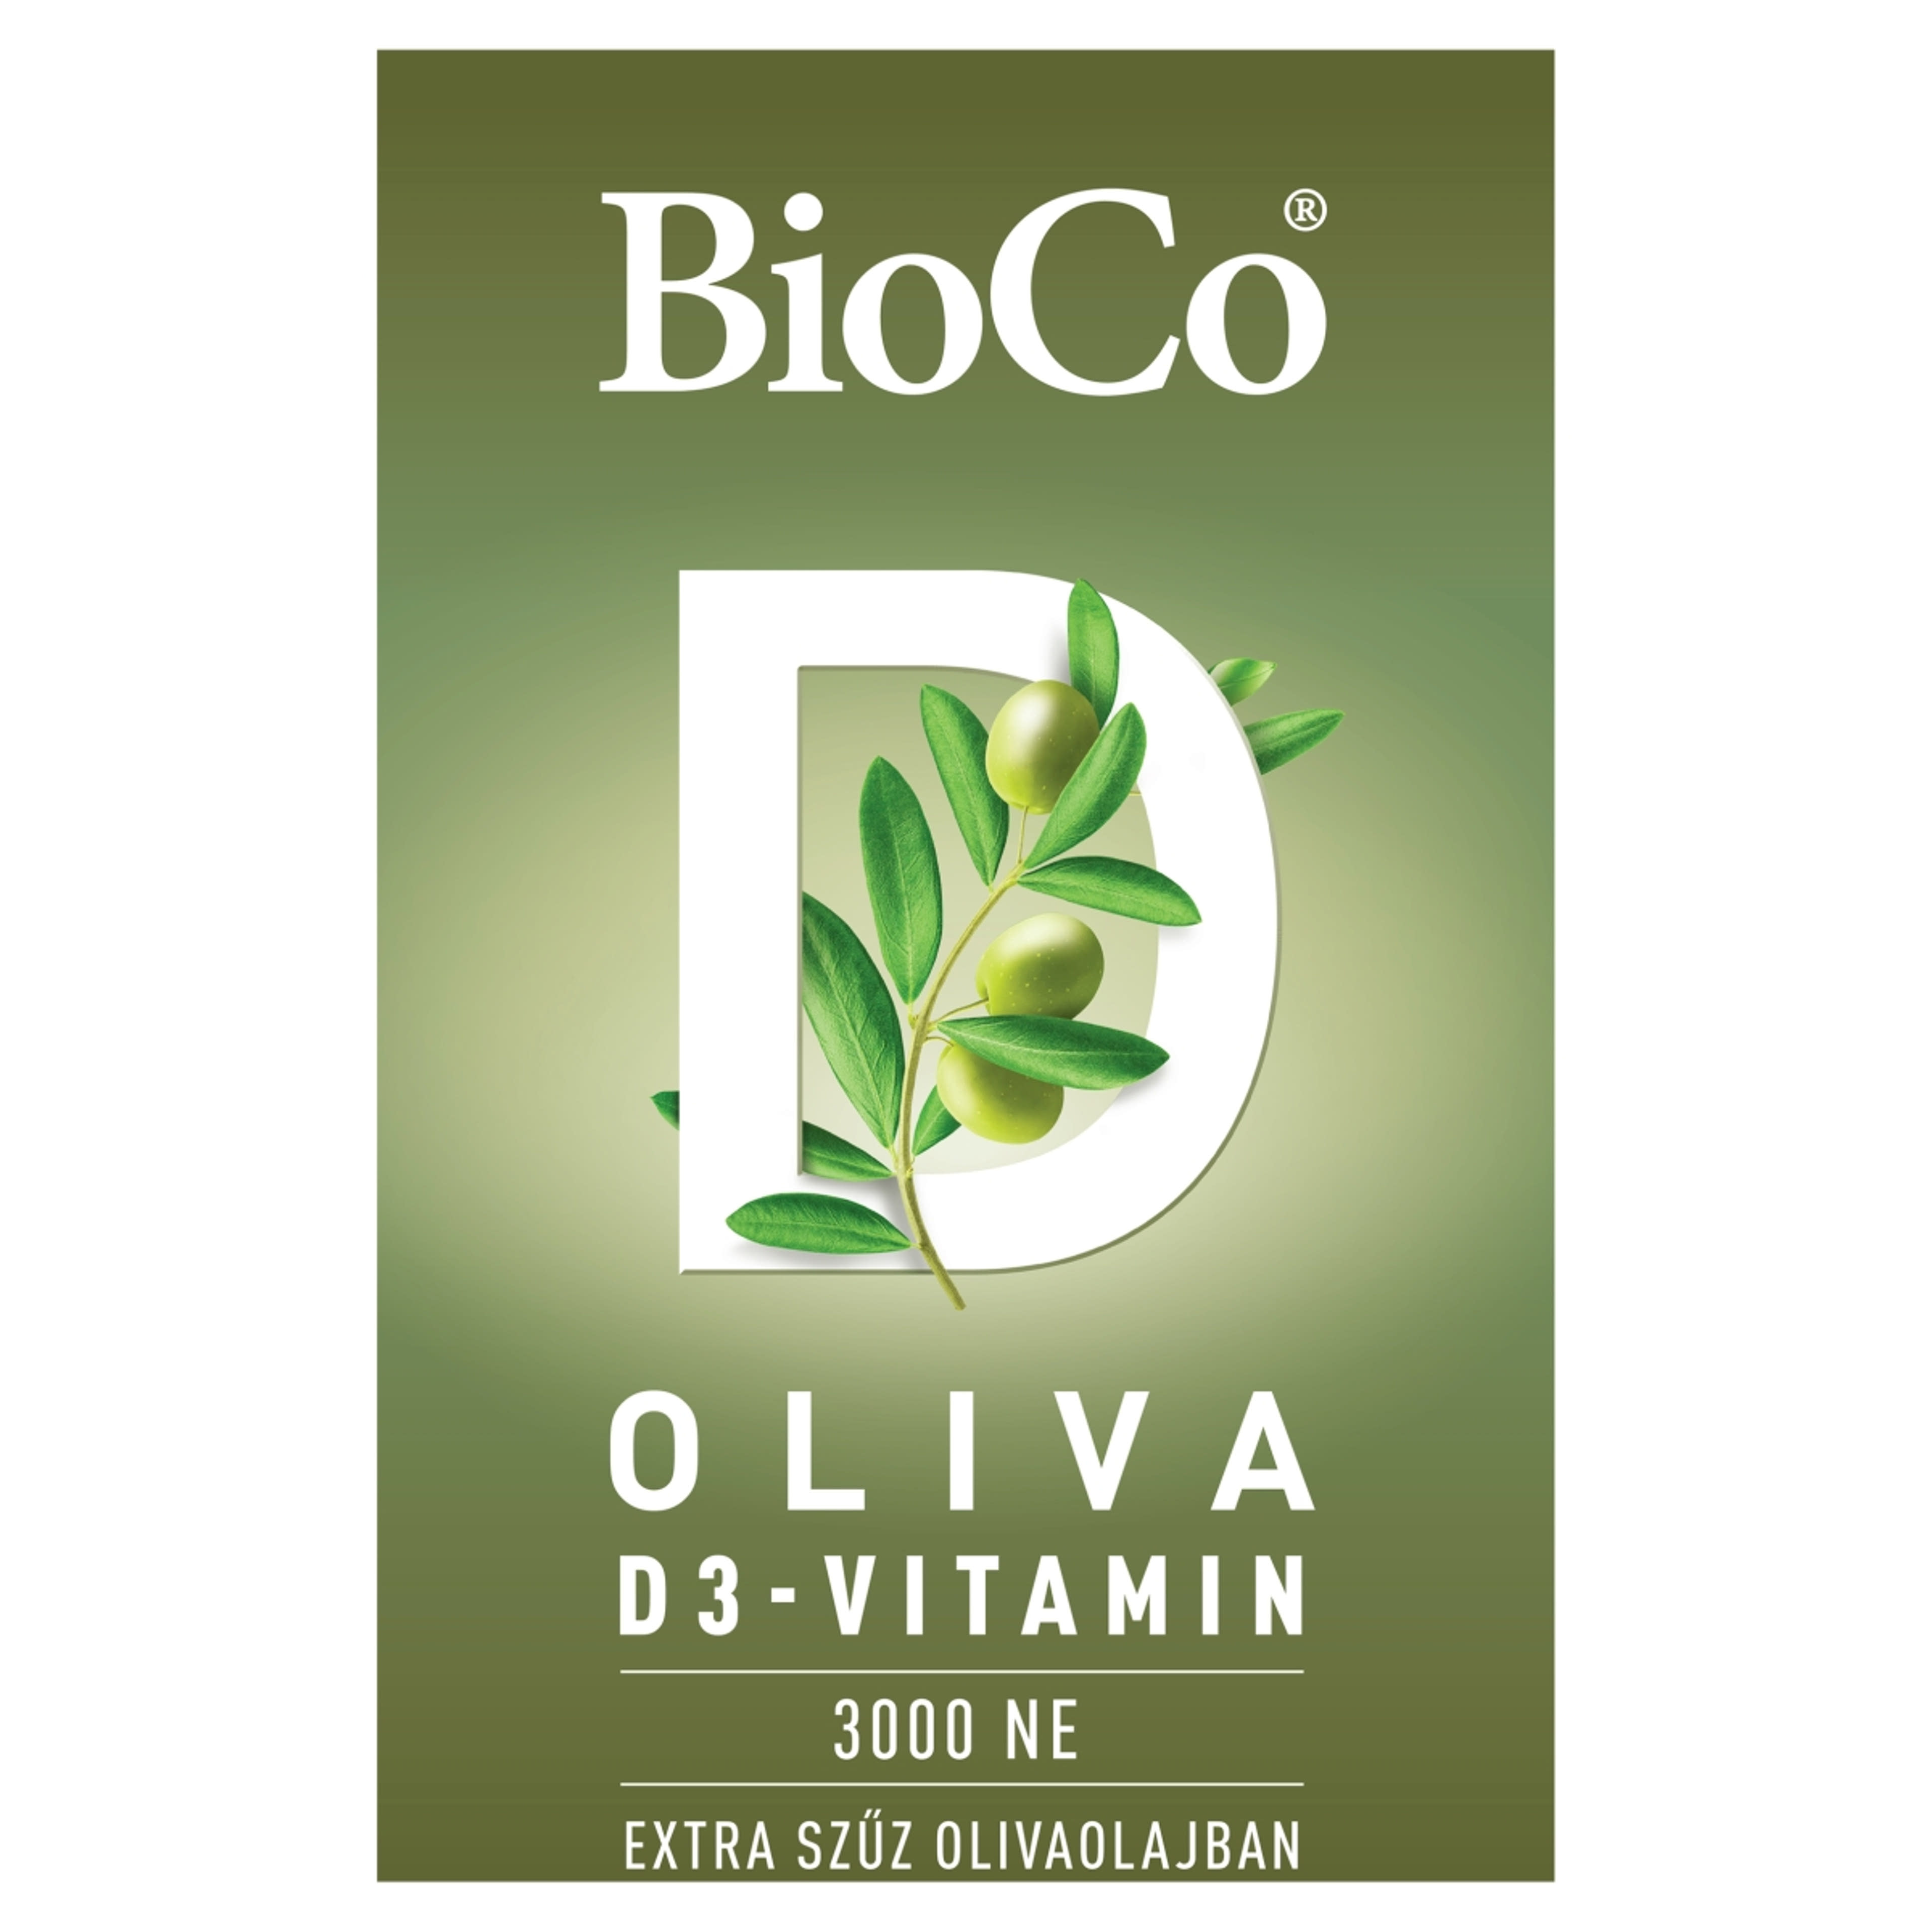 BioCo Oliva D3-vitamin 3000 NE étrend-kiegészítő lágyzselatin kapszula - 60 db-1